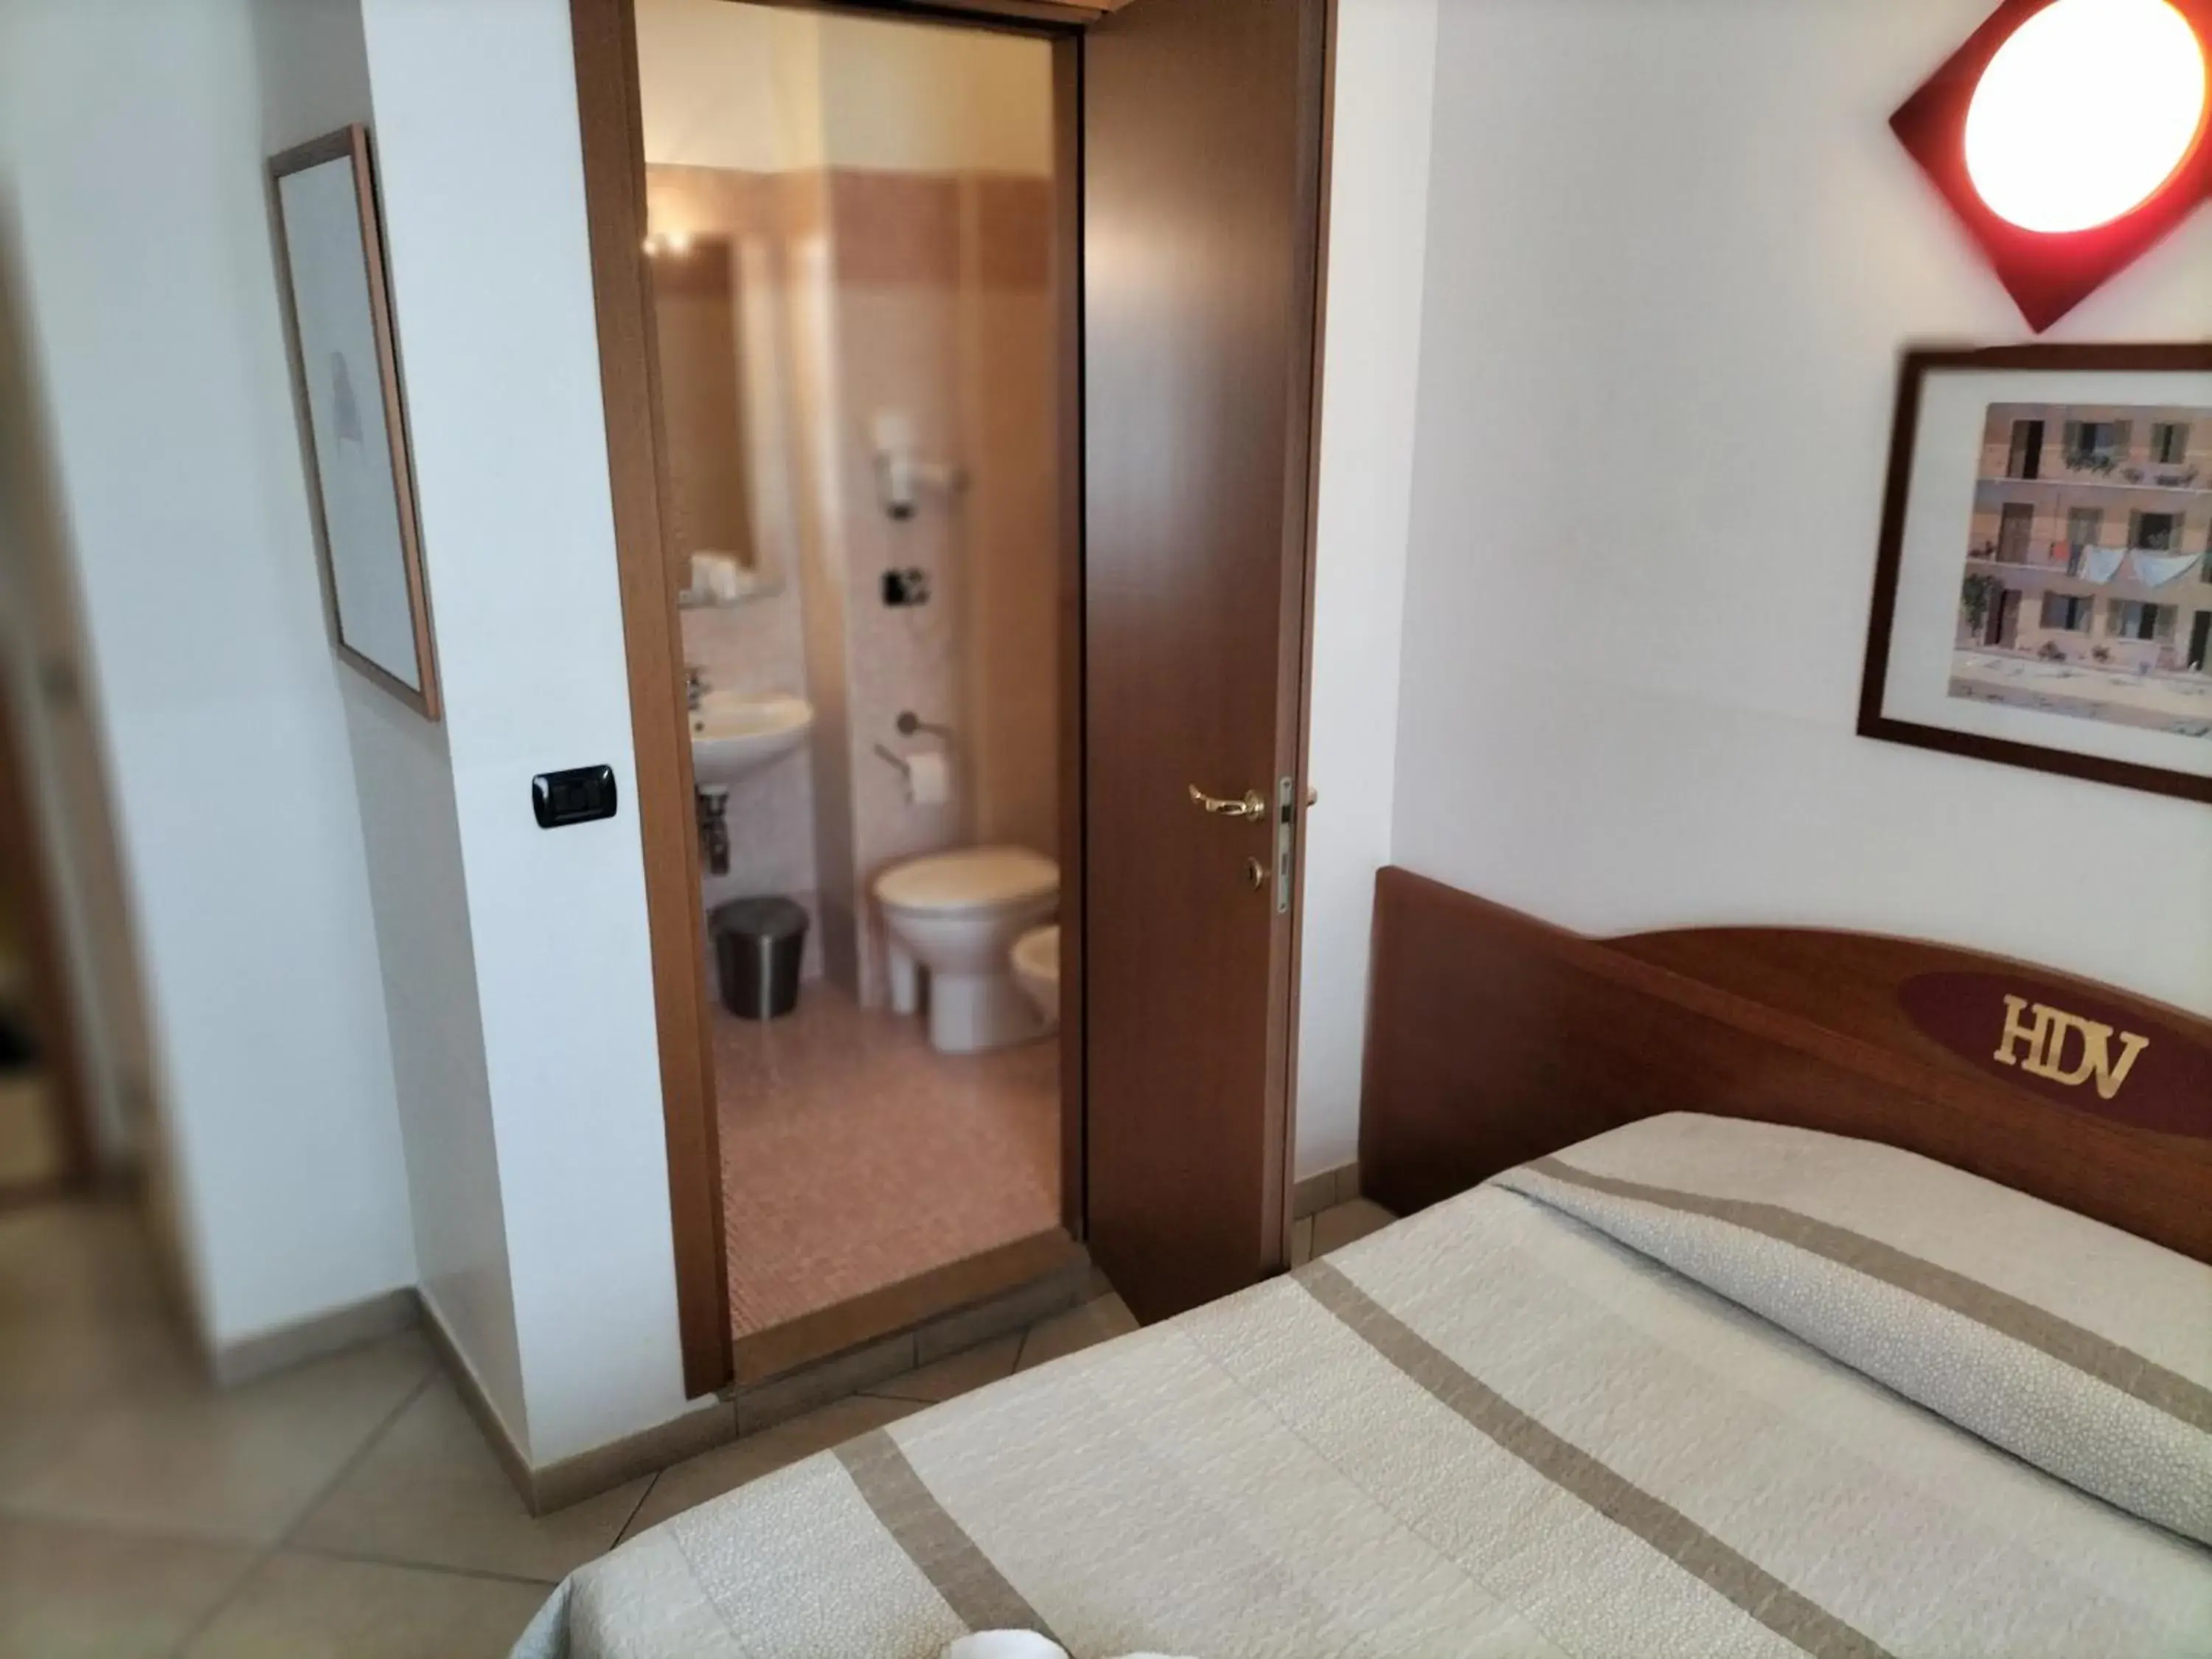 Bedroom, Bathroom in Hotel Della Volta